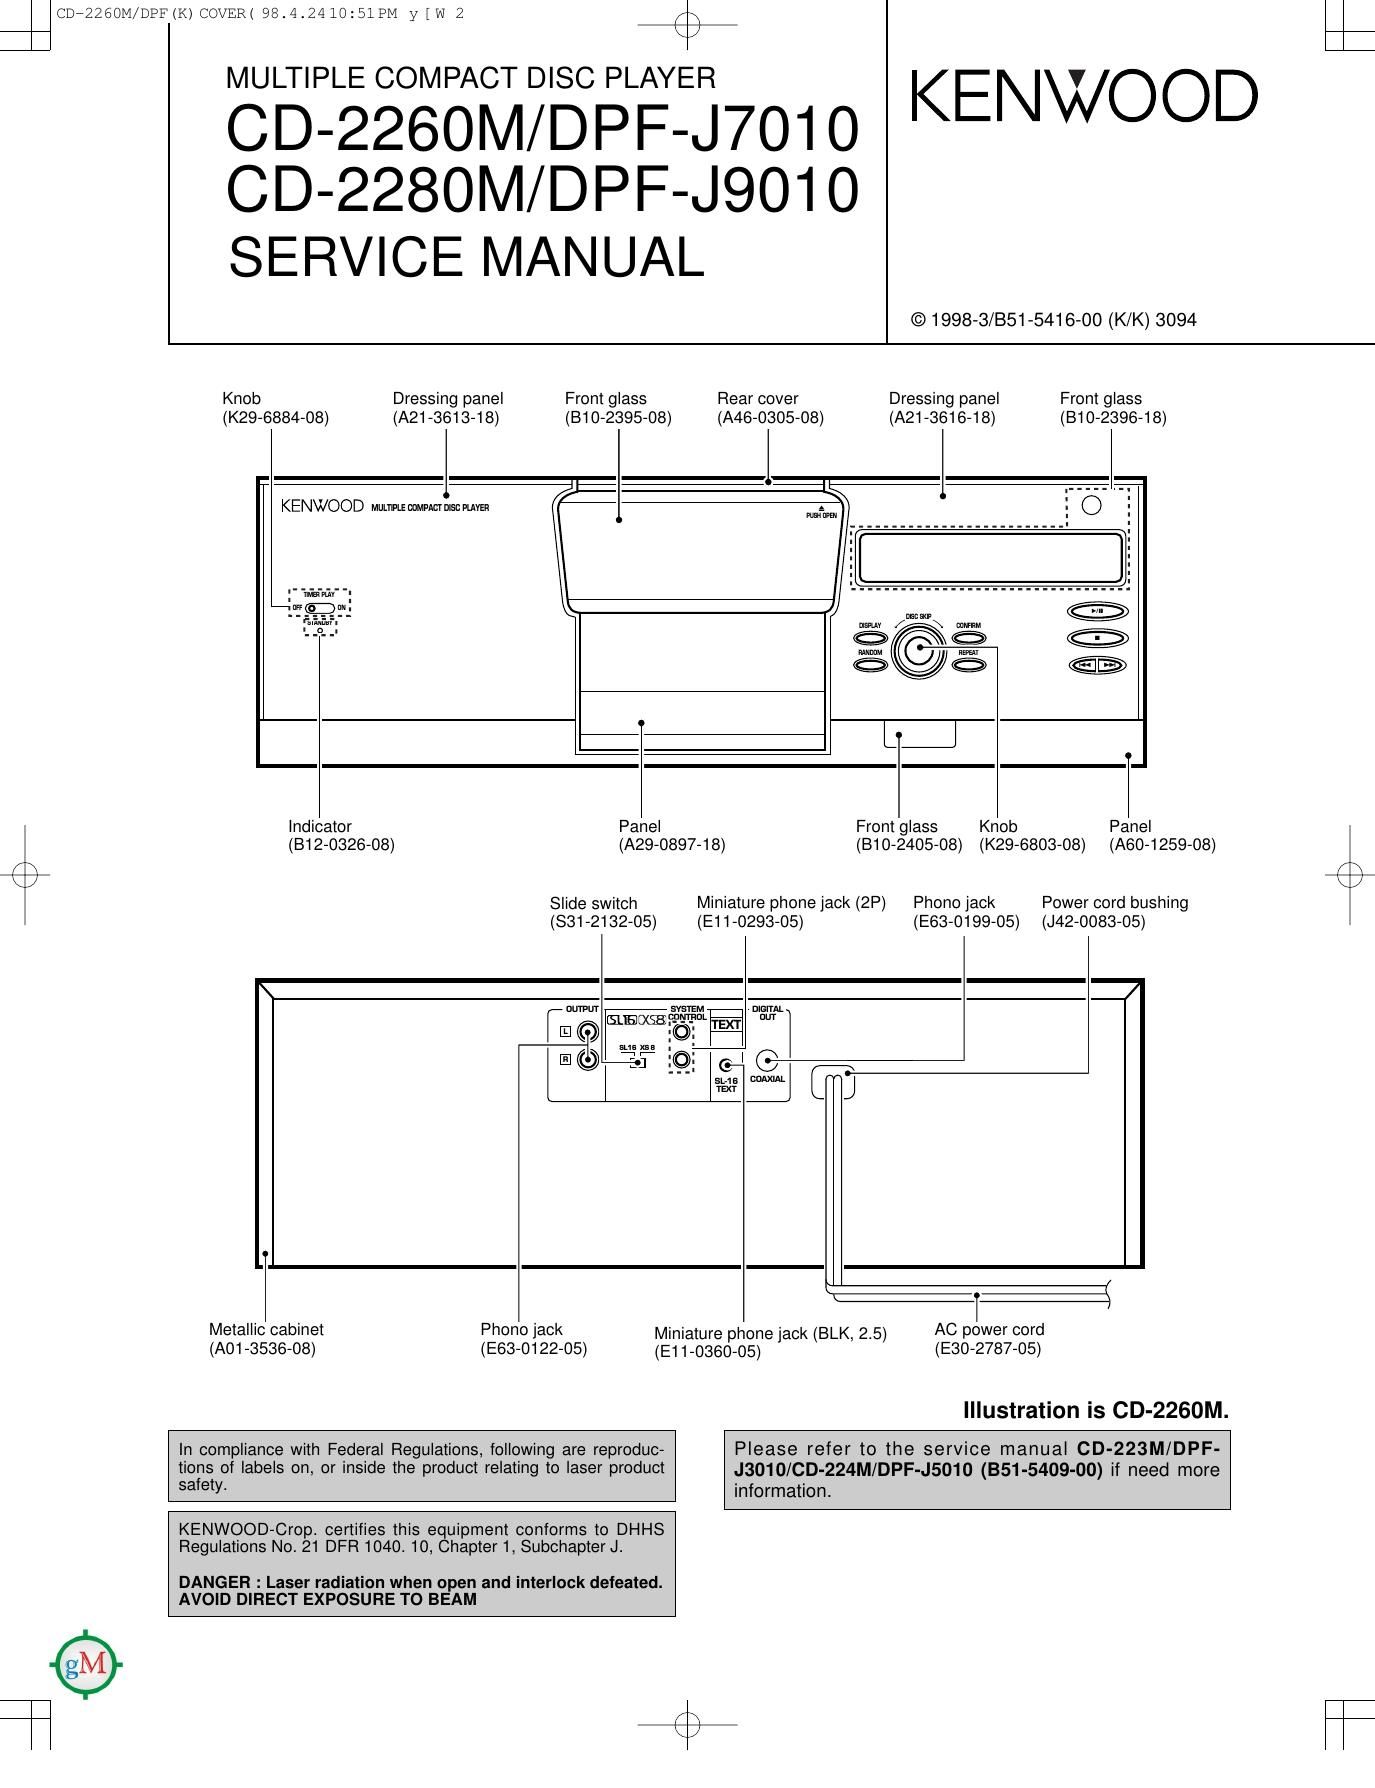 Kenwood CD 2260 M Service Manual